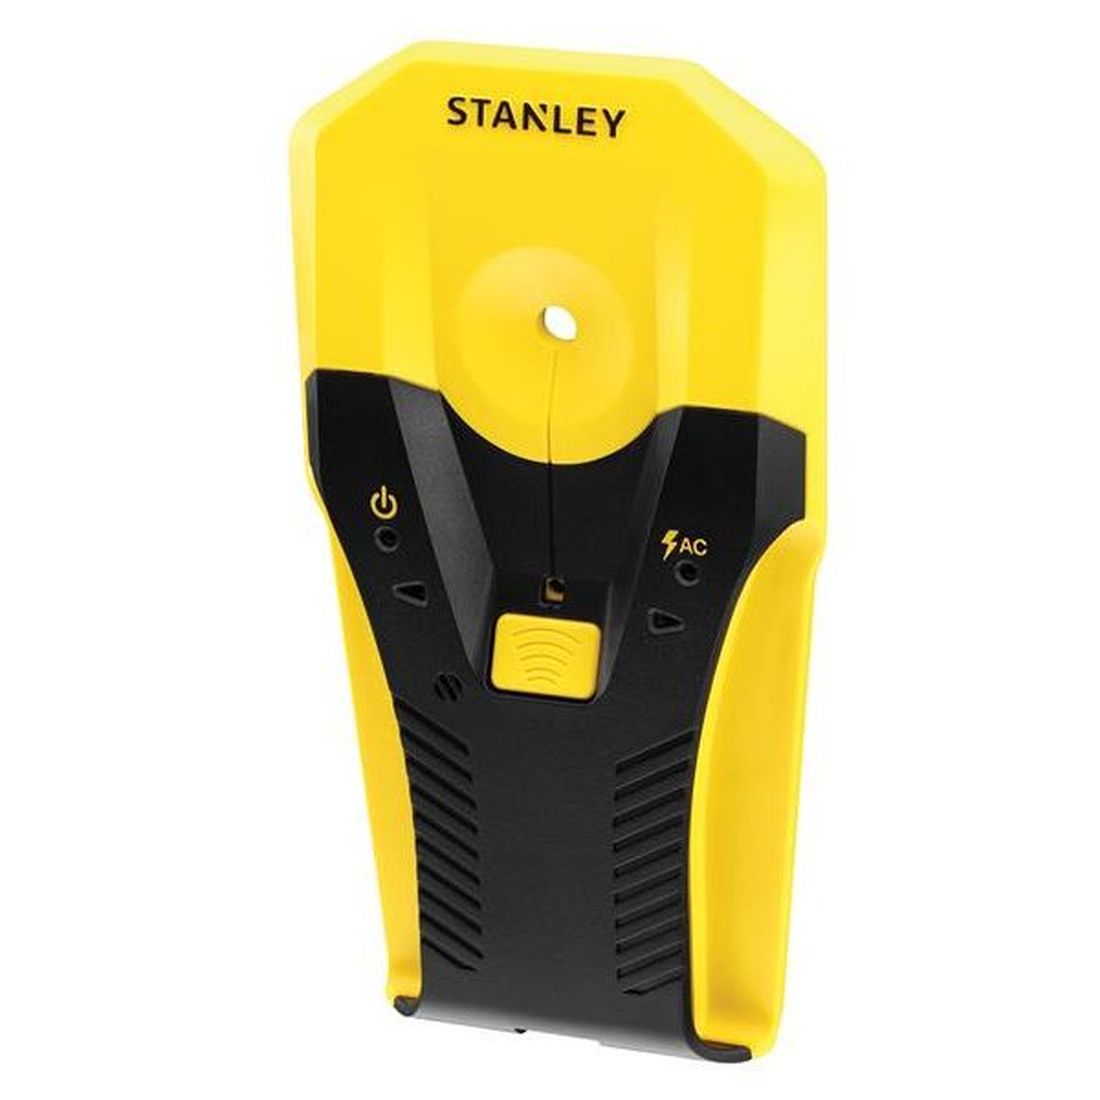 STANLEY S160 Stud Sensor                  